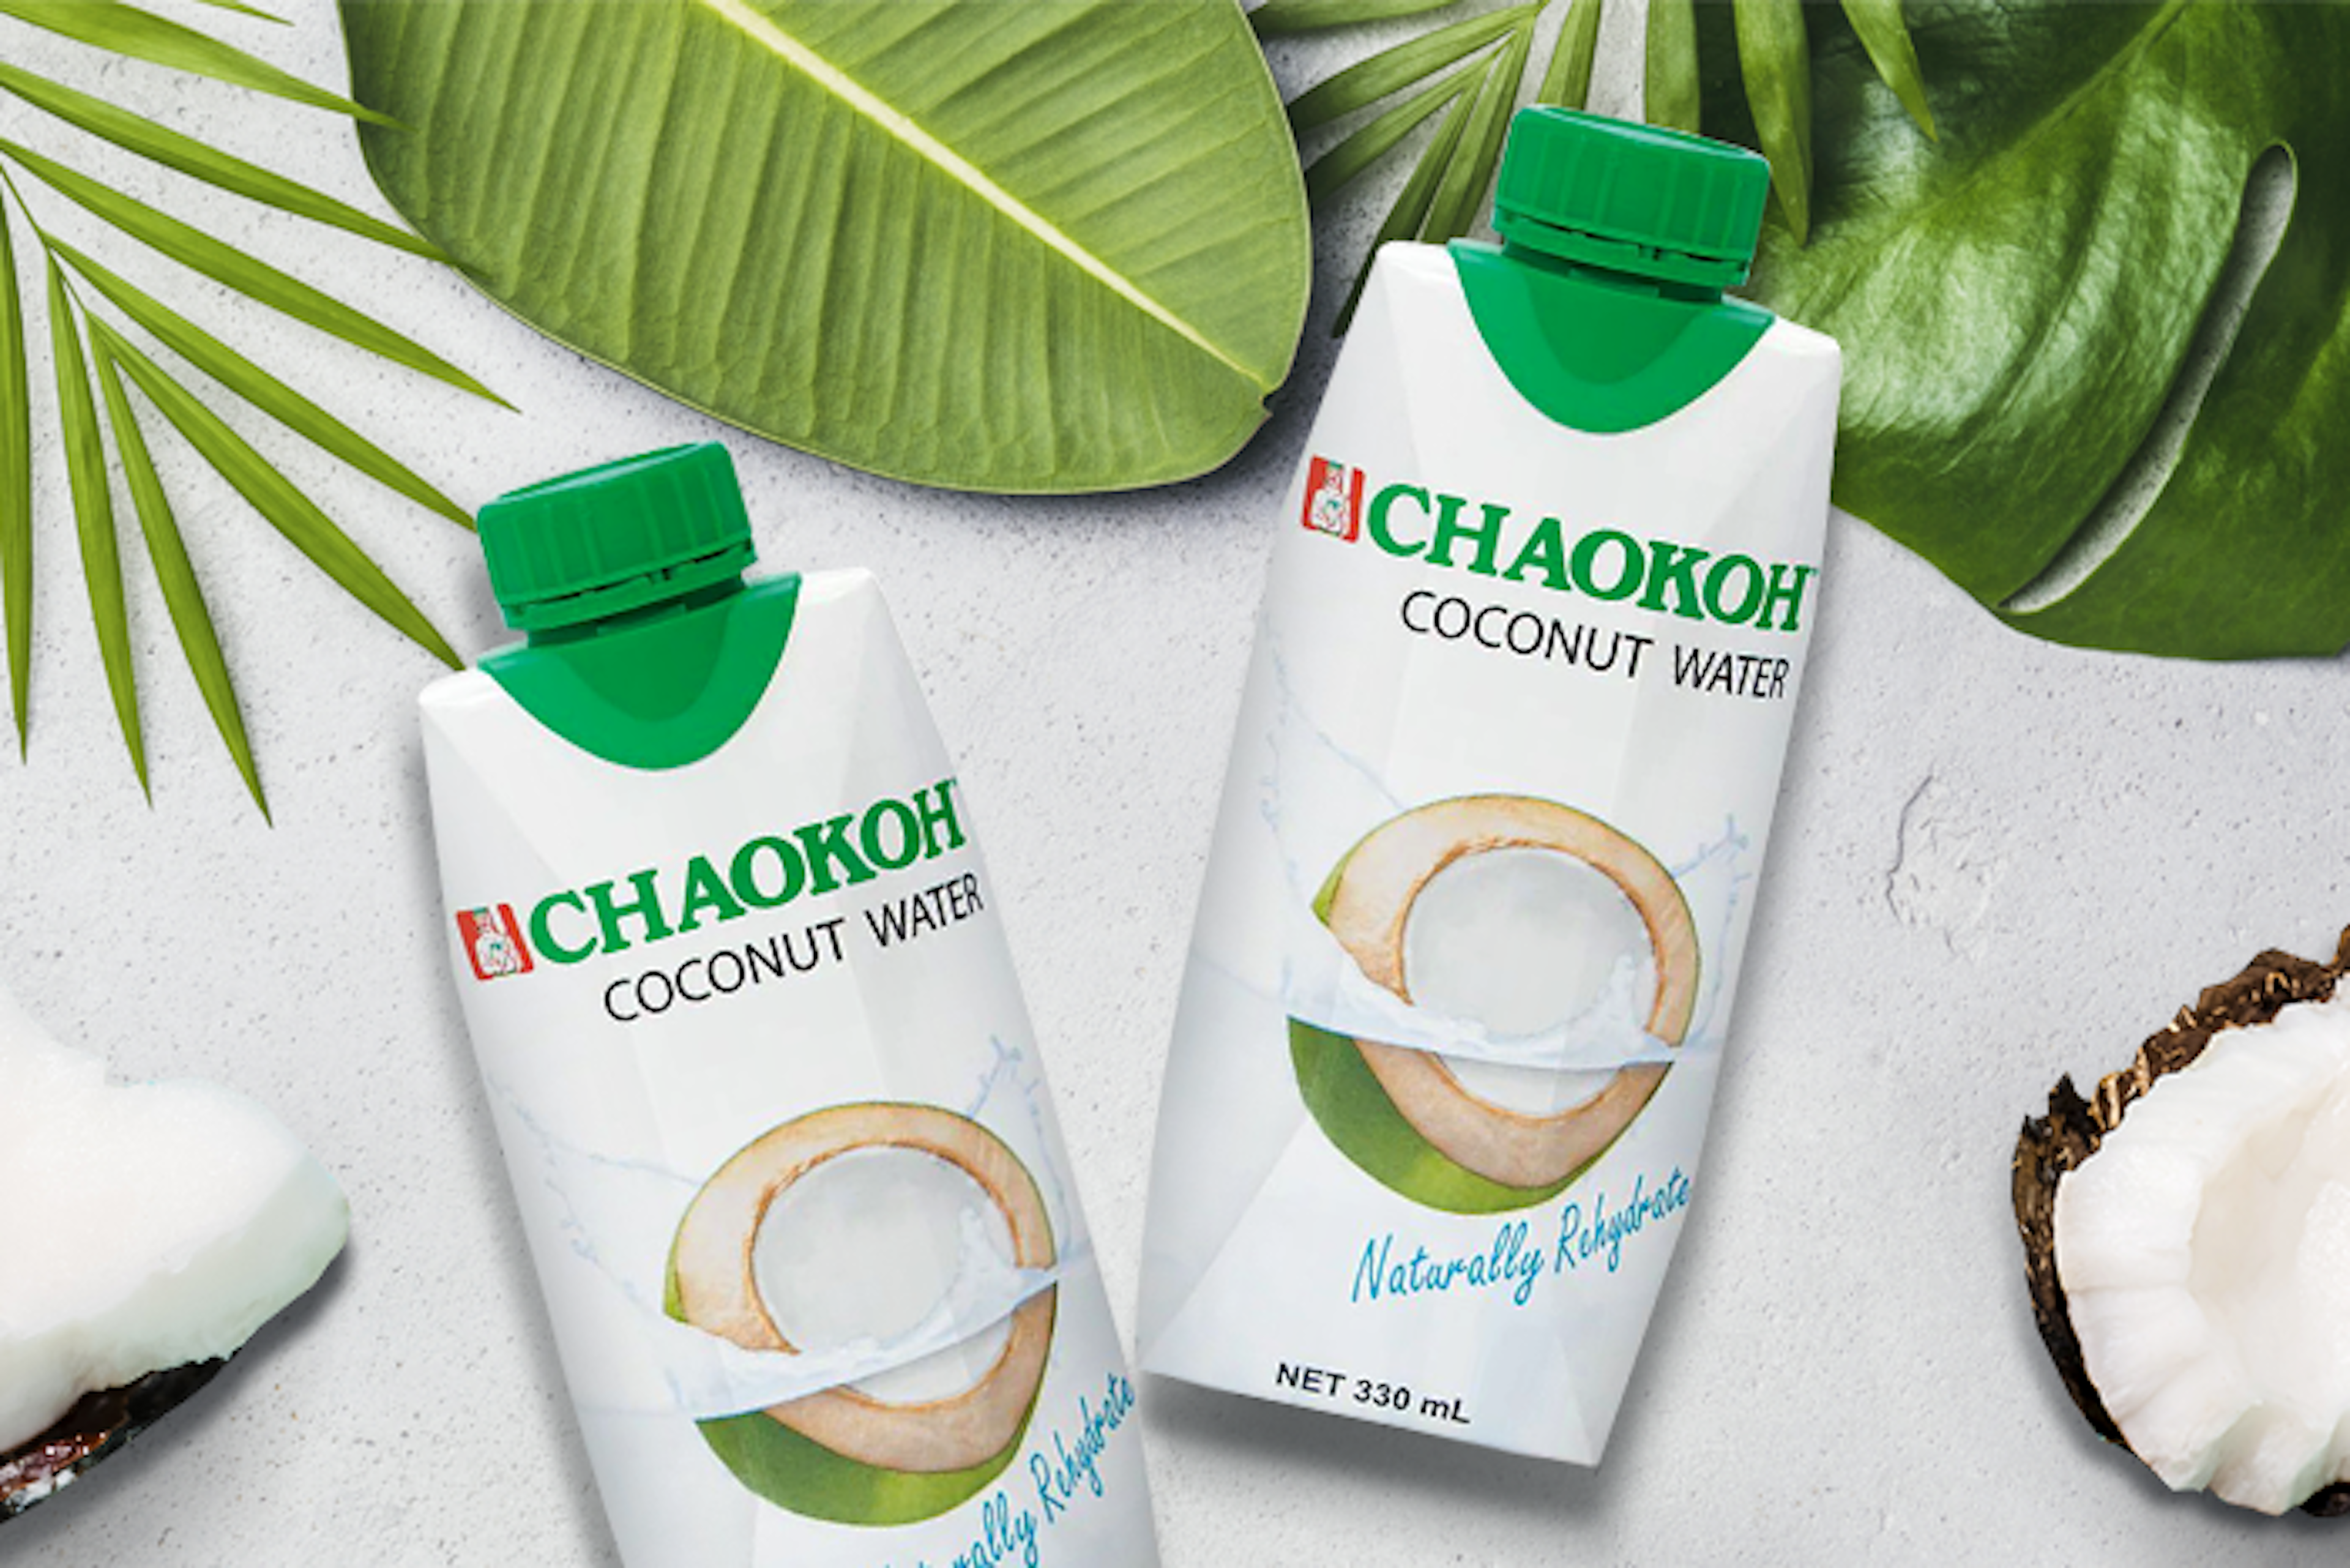 Vorderansicht der Chaokoh Kokosnusswasser 330ml Packung: Zeigt die attraktive Verpackung mit frischen Kokosnüssen